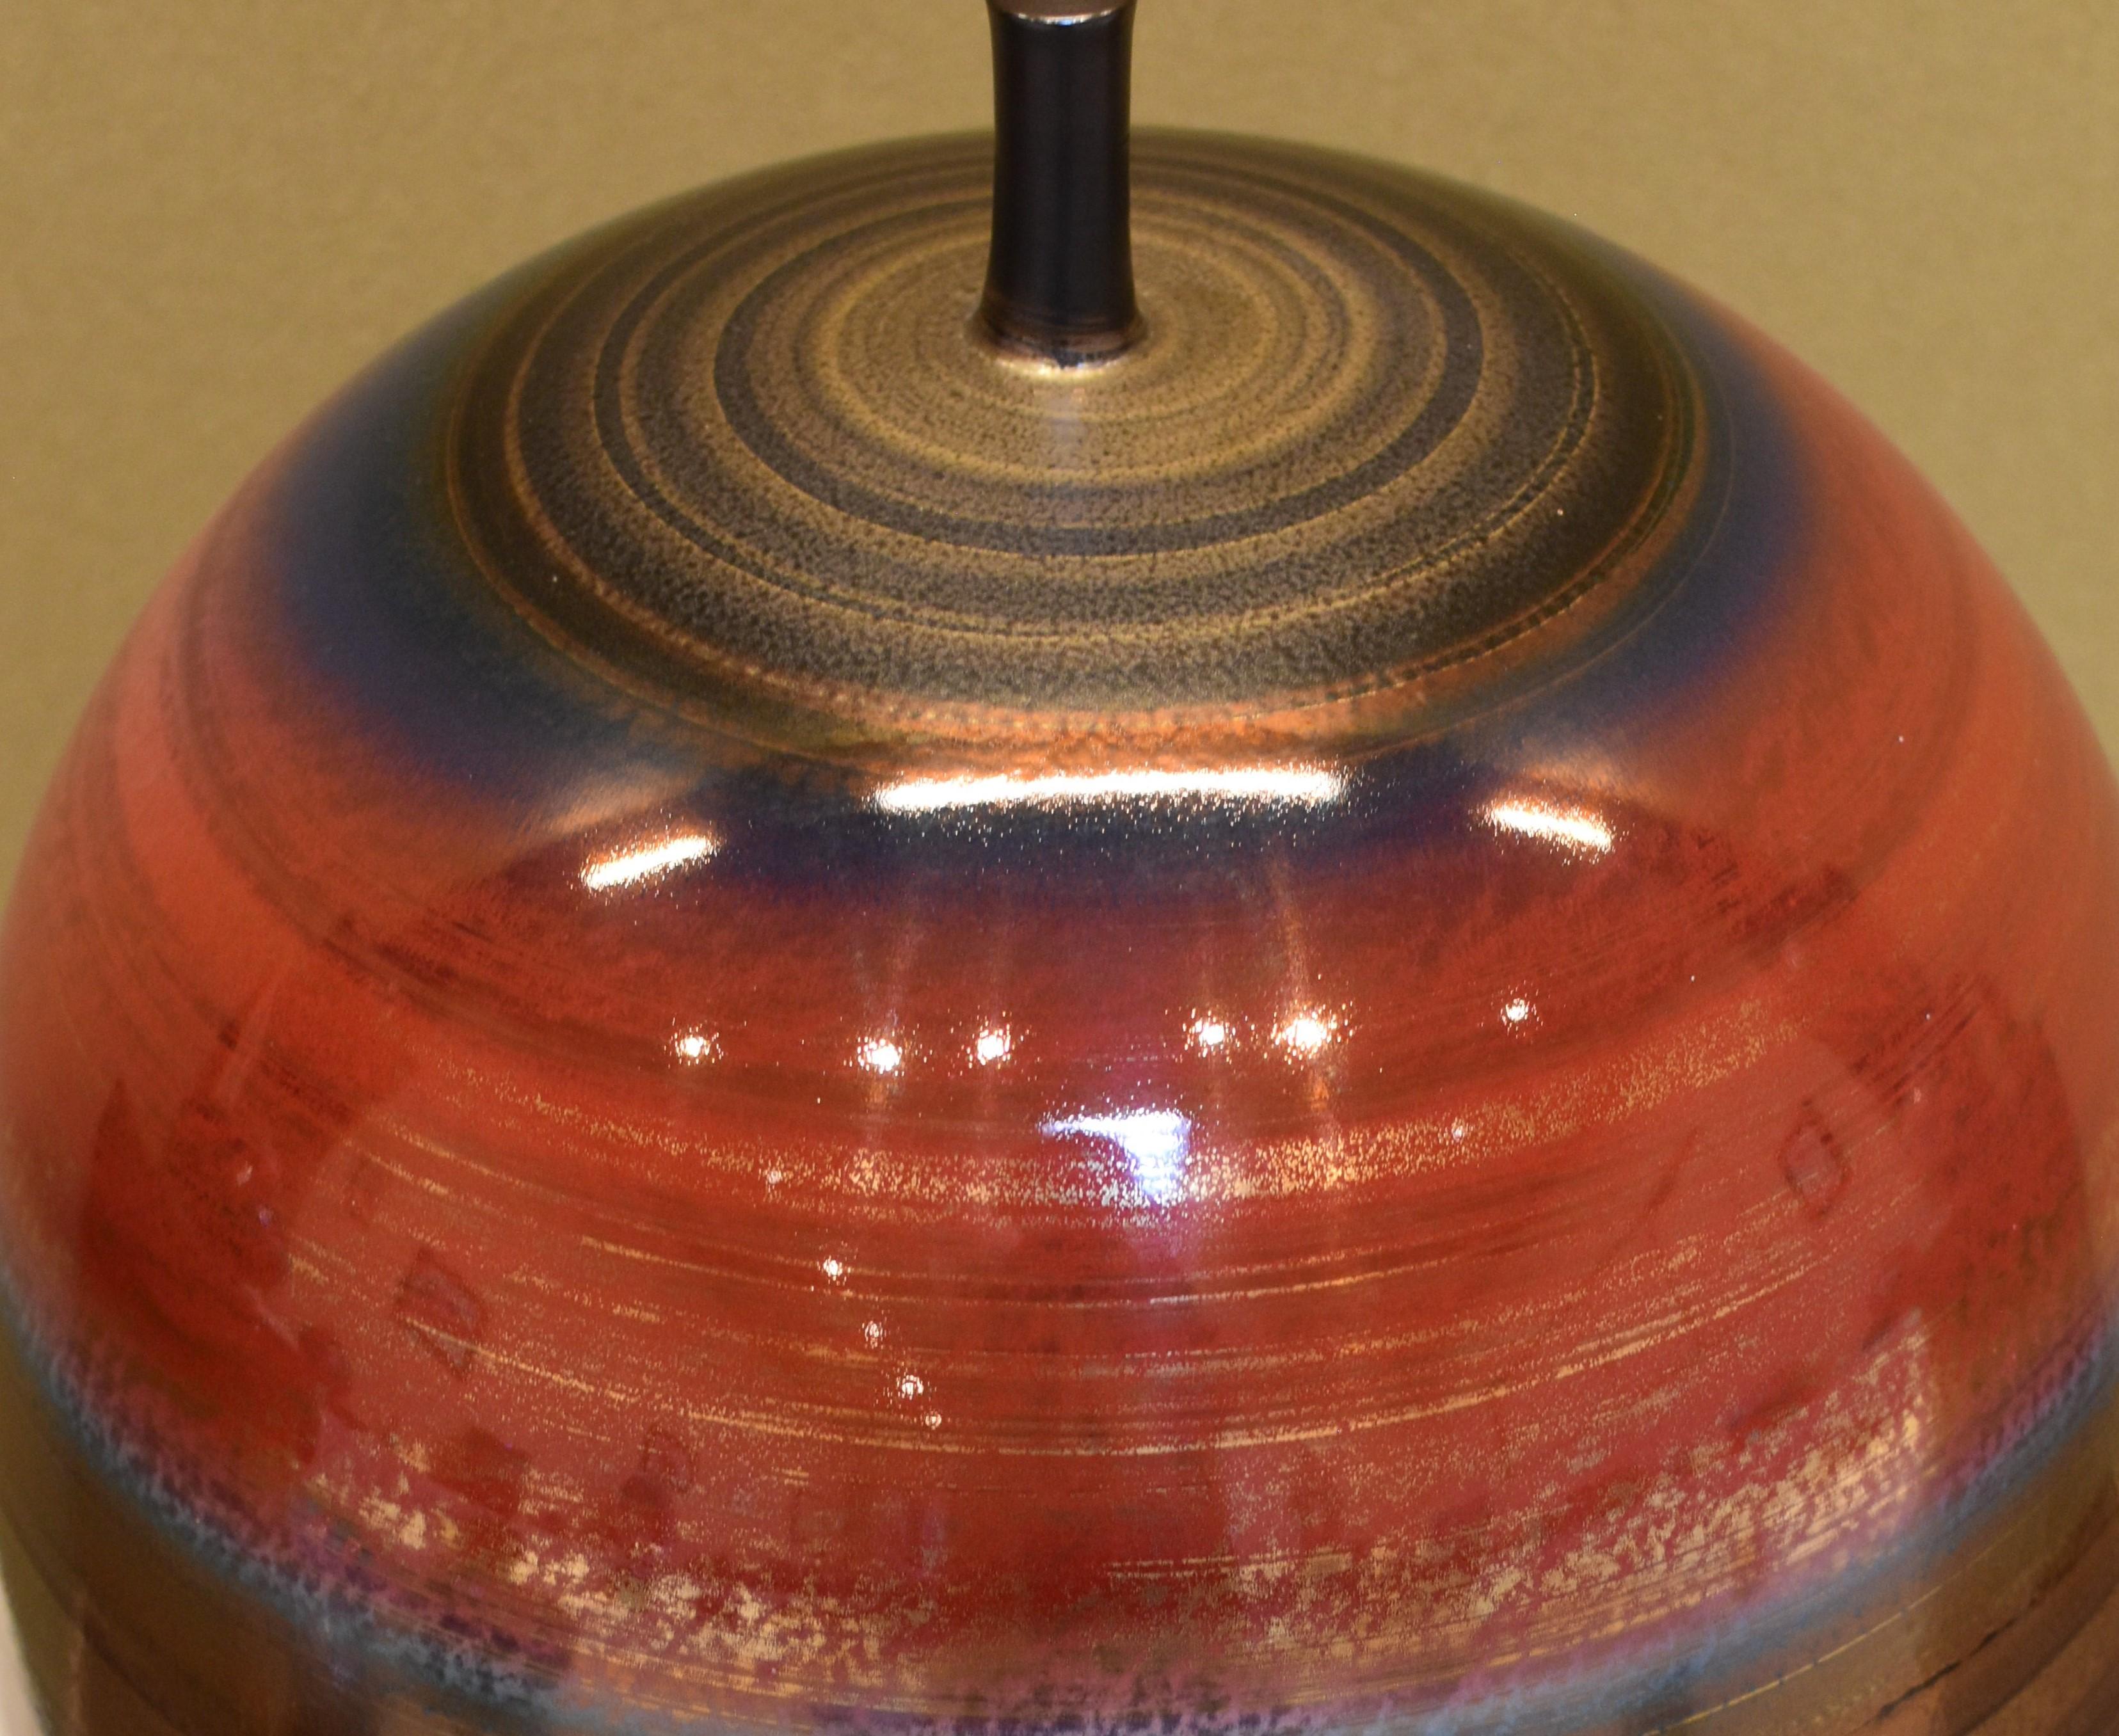 Extraordinaire grand vase contemporain en porcelaine décorative émaillée à la main en rouge, platine et or sur une forme de cloche étonnante et unique, un chef-d'œuvre d'exposition primé de Sadamatsu, un maître porcelainier de la région